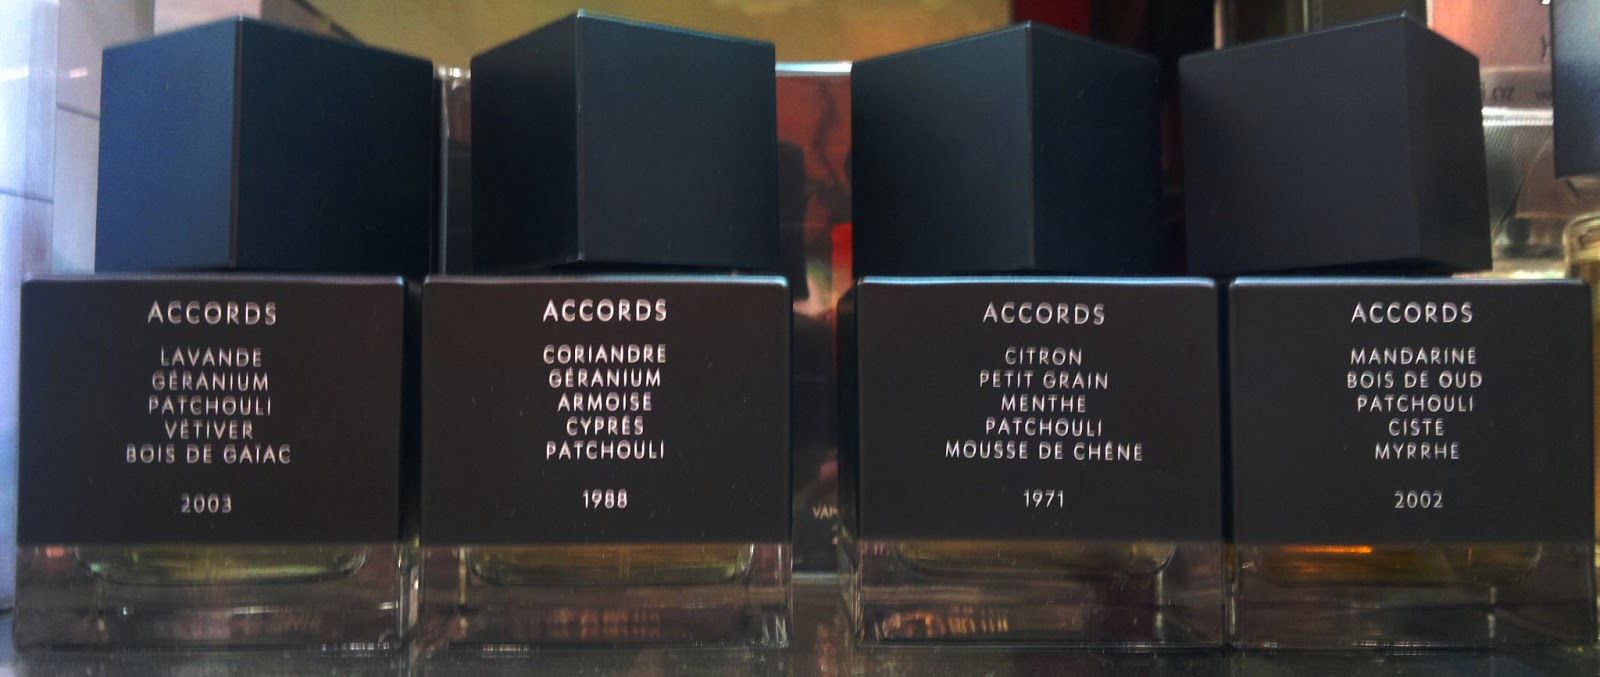 La Collection Rive Gauche Pour Homme Yves Saint Laurent cologne - a  fragrance for men 2011